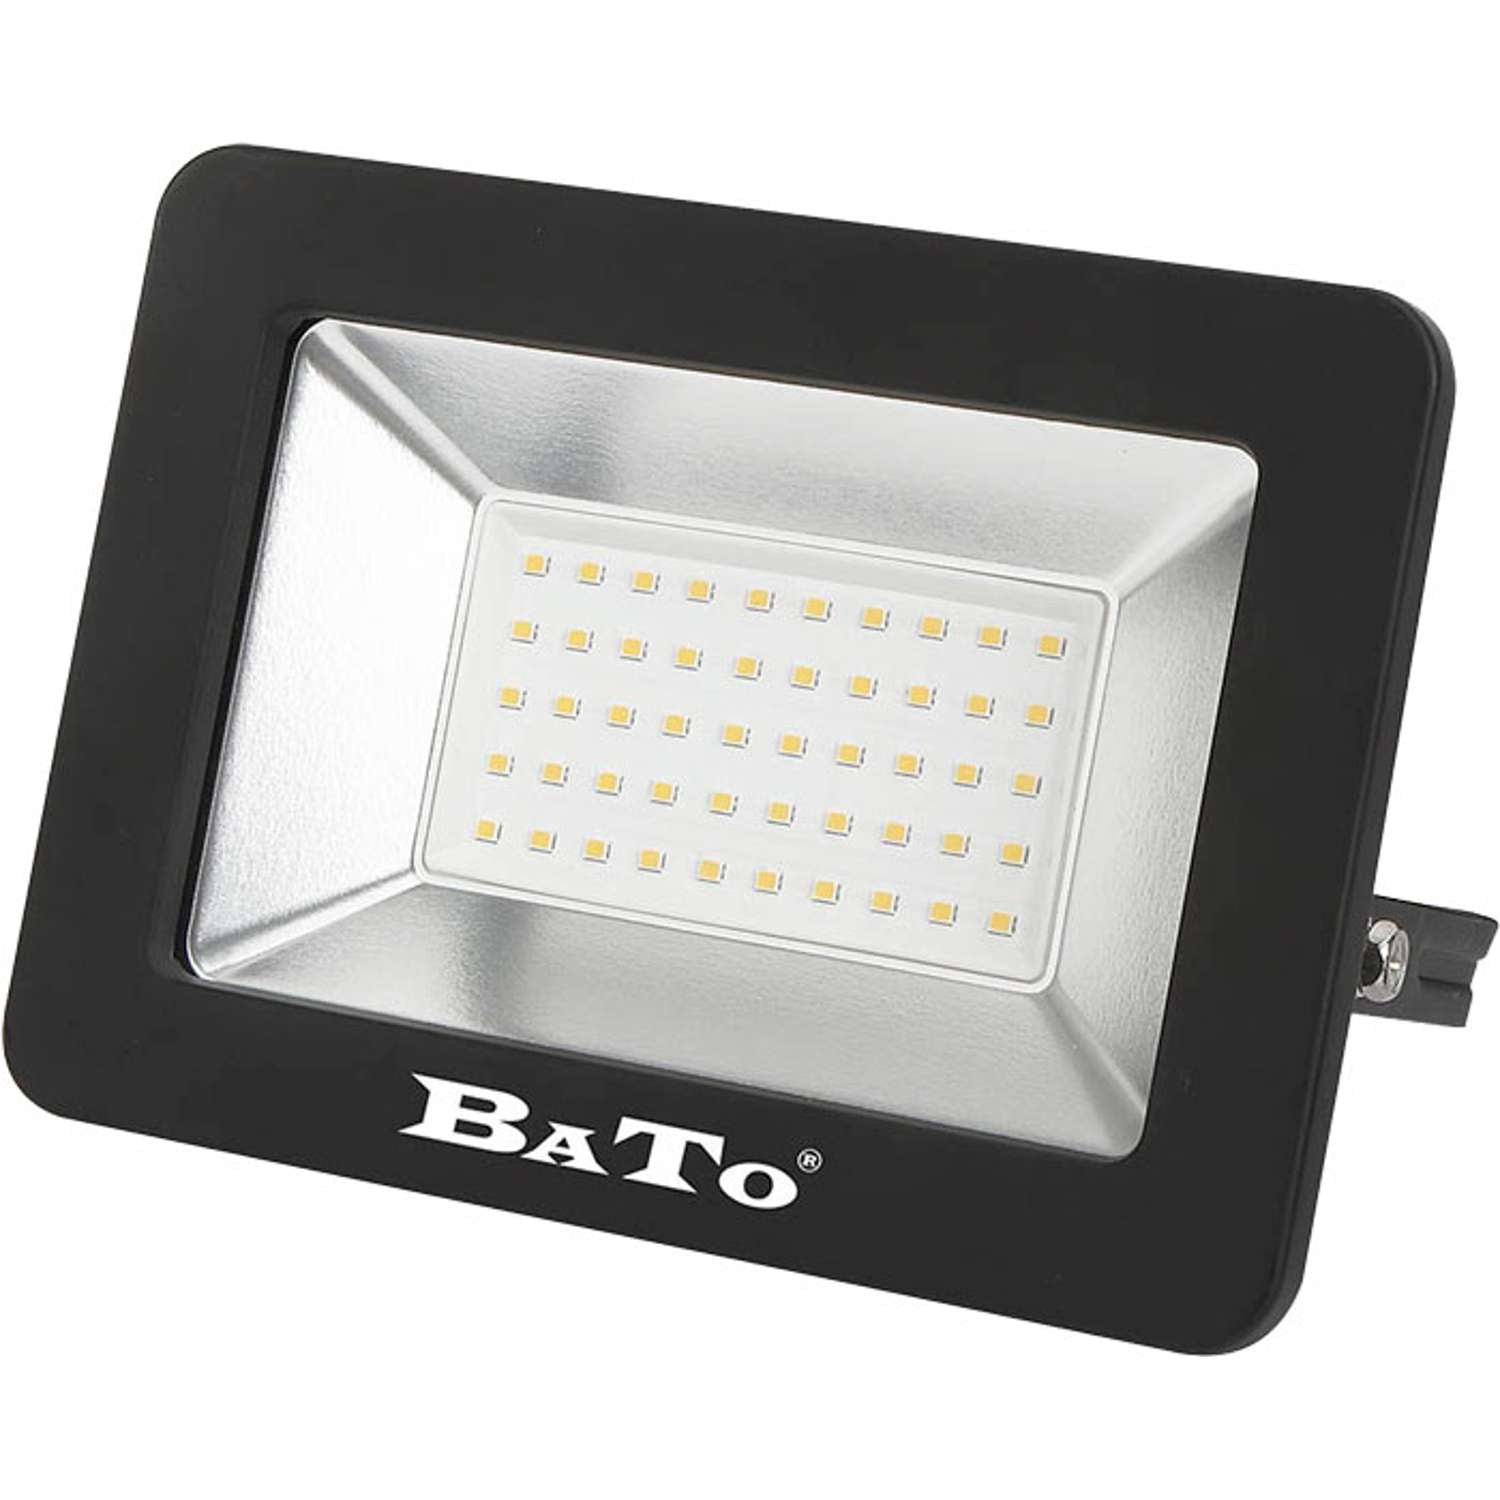 Billede af BATO LED Projektør 50W lampe 4000 Lumen. hos Toolster.dk